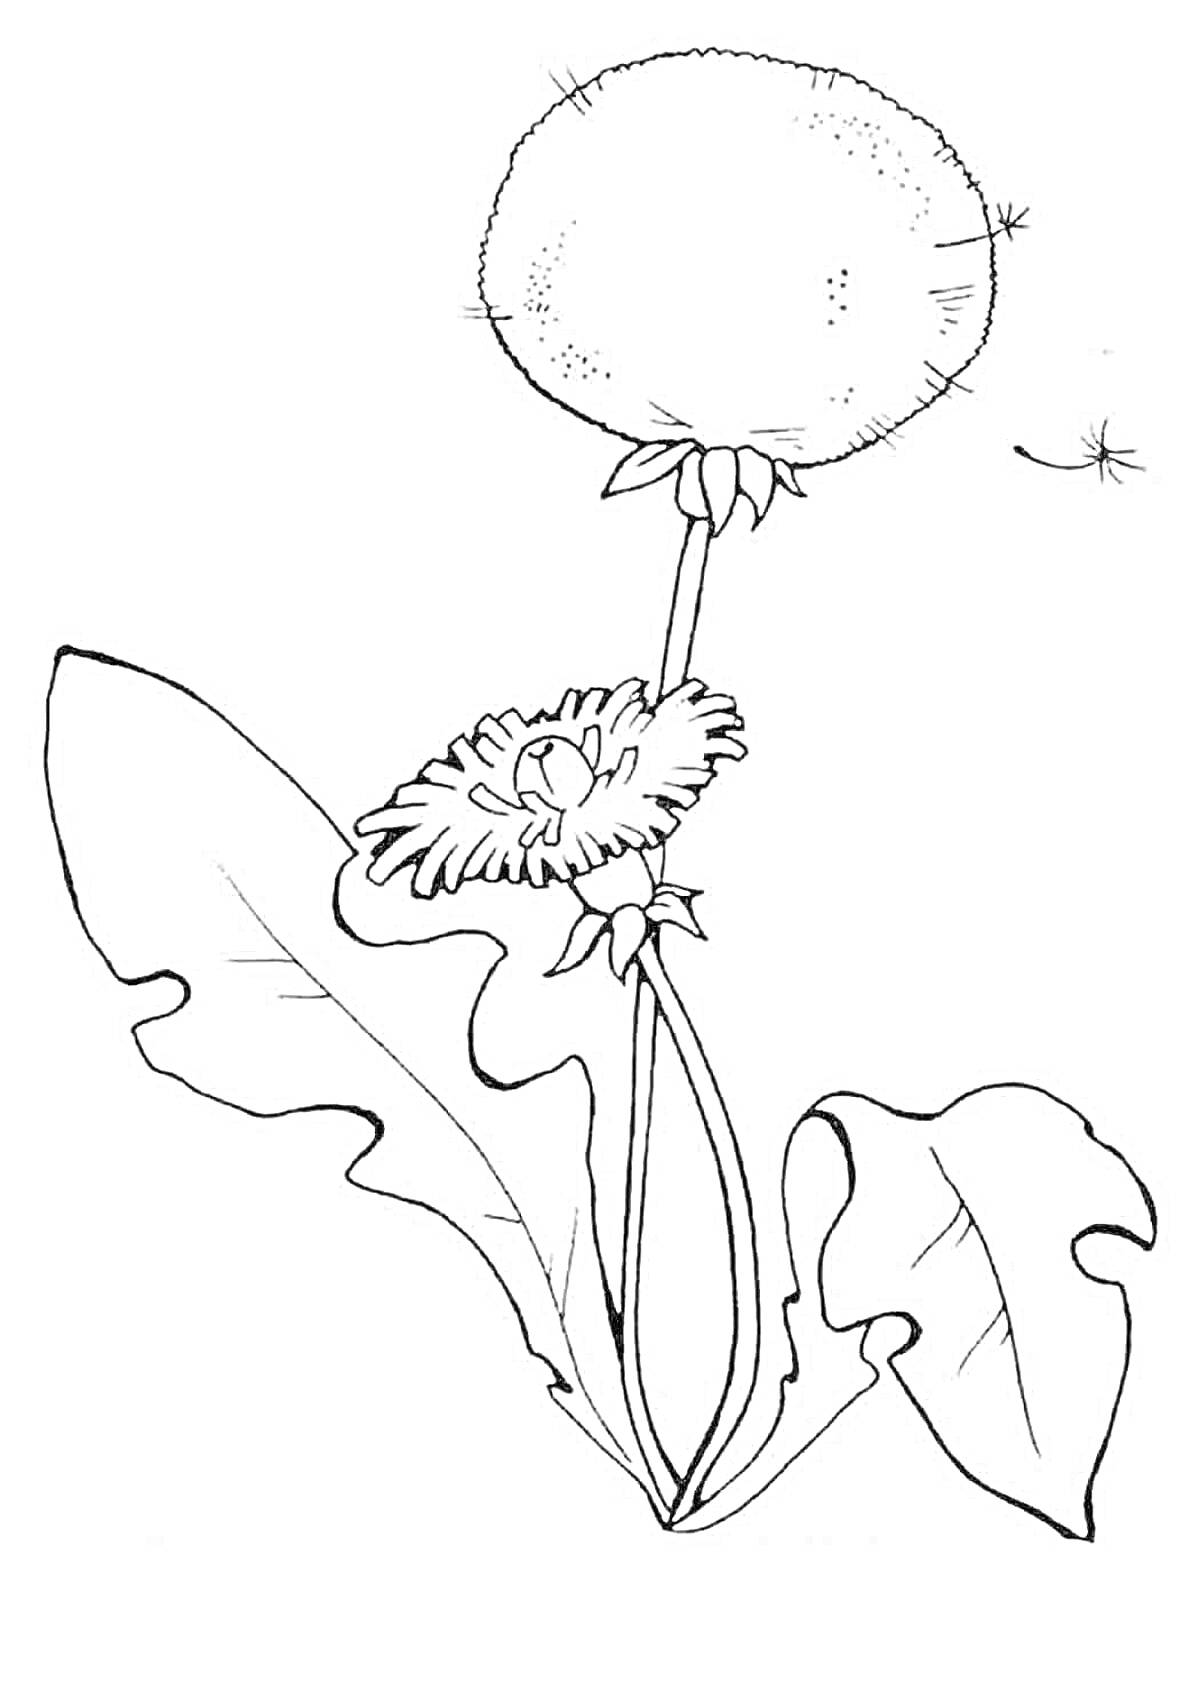 Раскраска Одуванчик с двумя цветами и листом, одно семечко летит